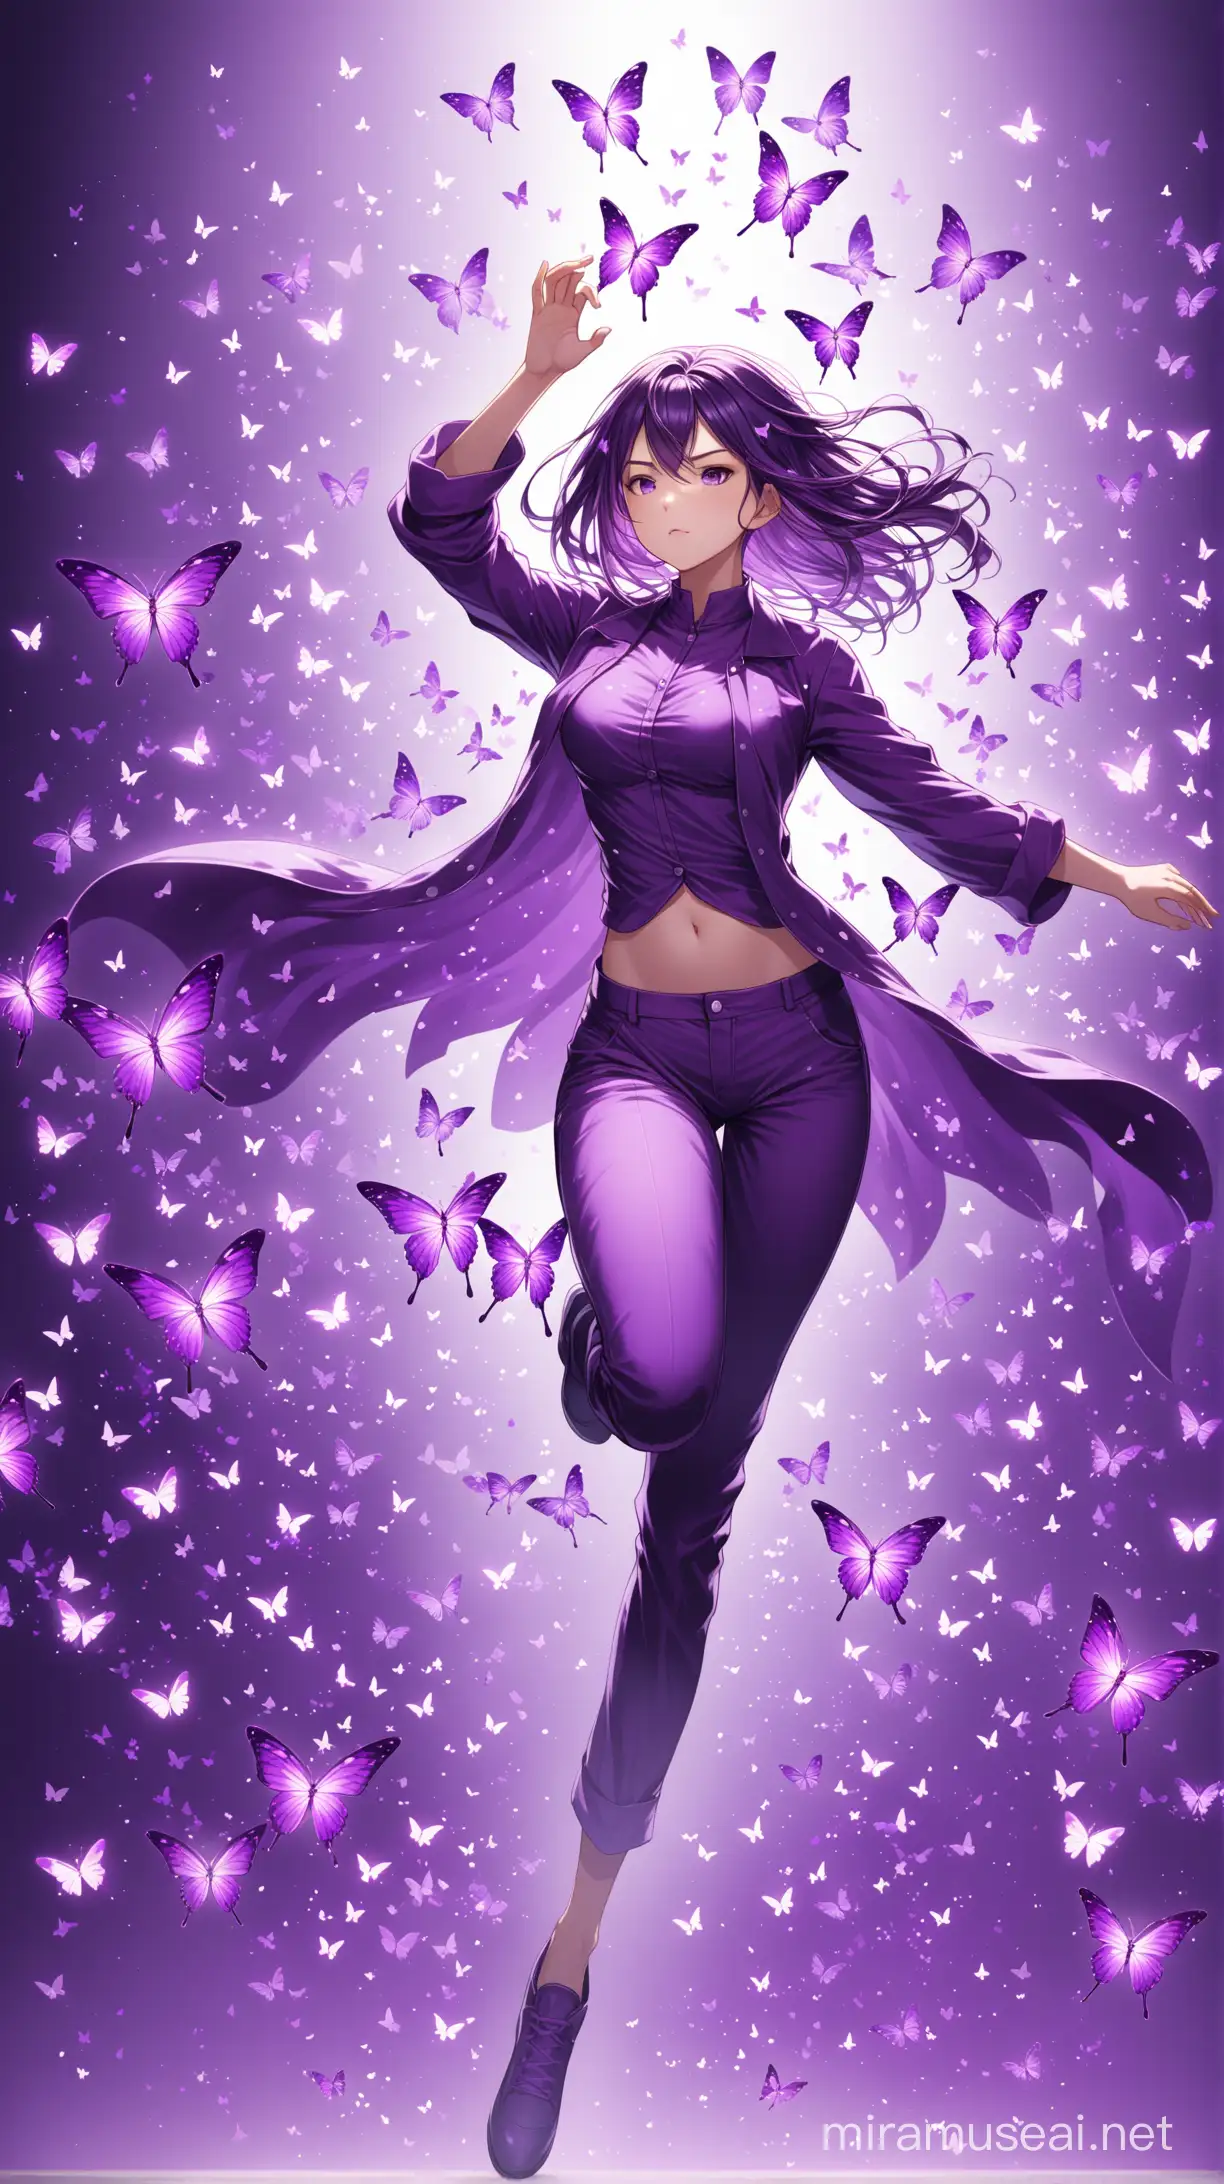 Graceful Girl in Motion Purple Butterfly Fantasy